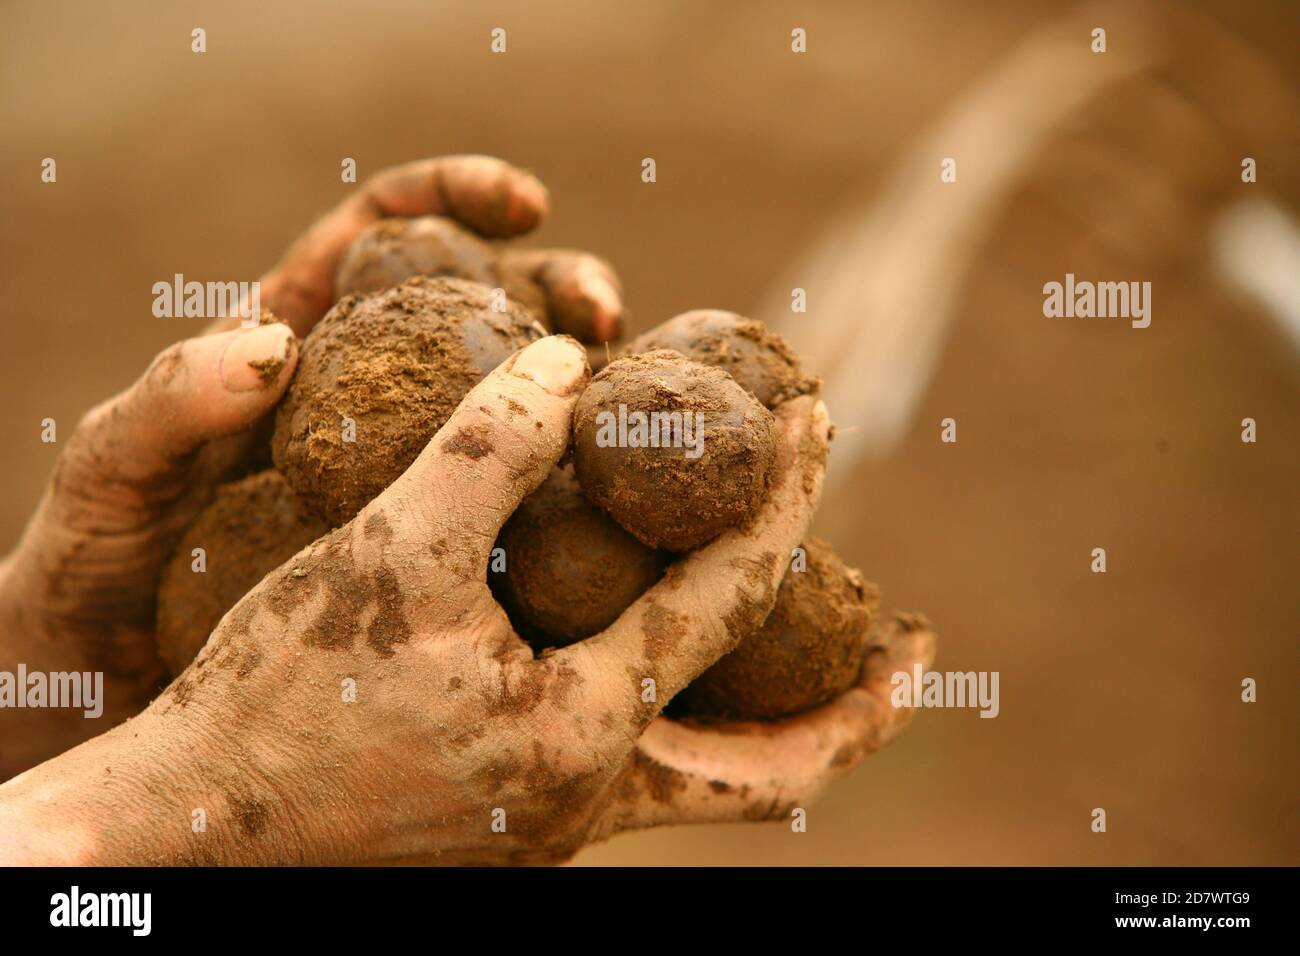 Kartoffelernte mit den Händen. Picking potatoes with your hands. Stock Photo